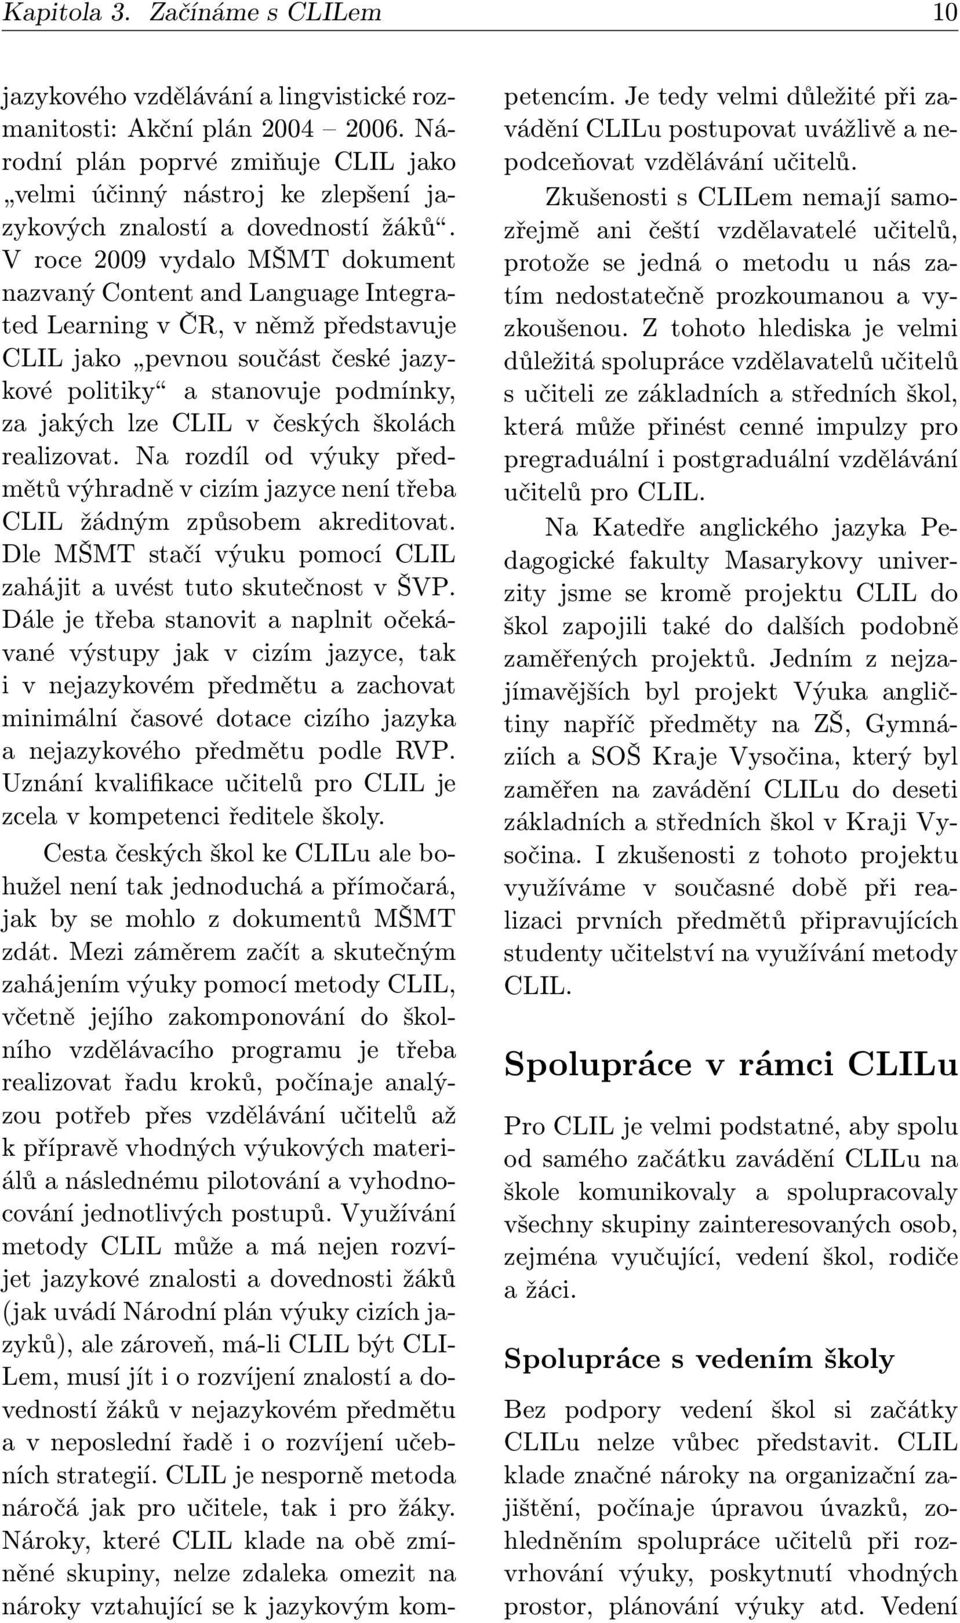 V roce 2009 vydalo MŠMT dokument nazvaný Content and Language Integrated Learning v ČR, v němž představuje CLIL jako pevnou součást české jazykové politiky a stanovuje podmínky, za jakých lze CLIL v